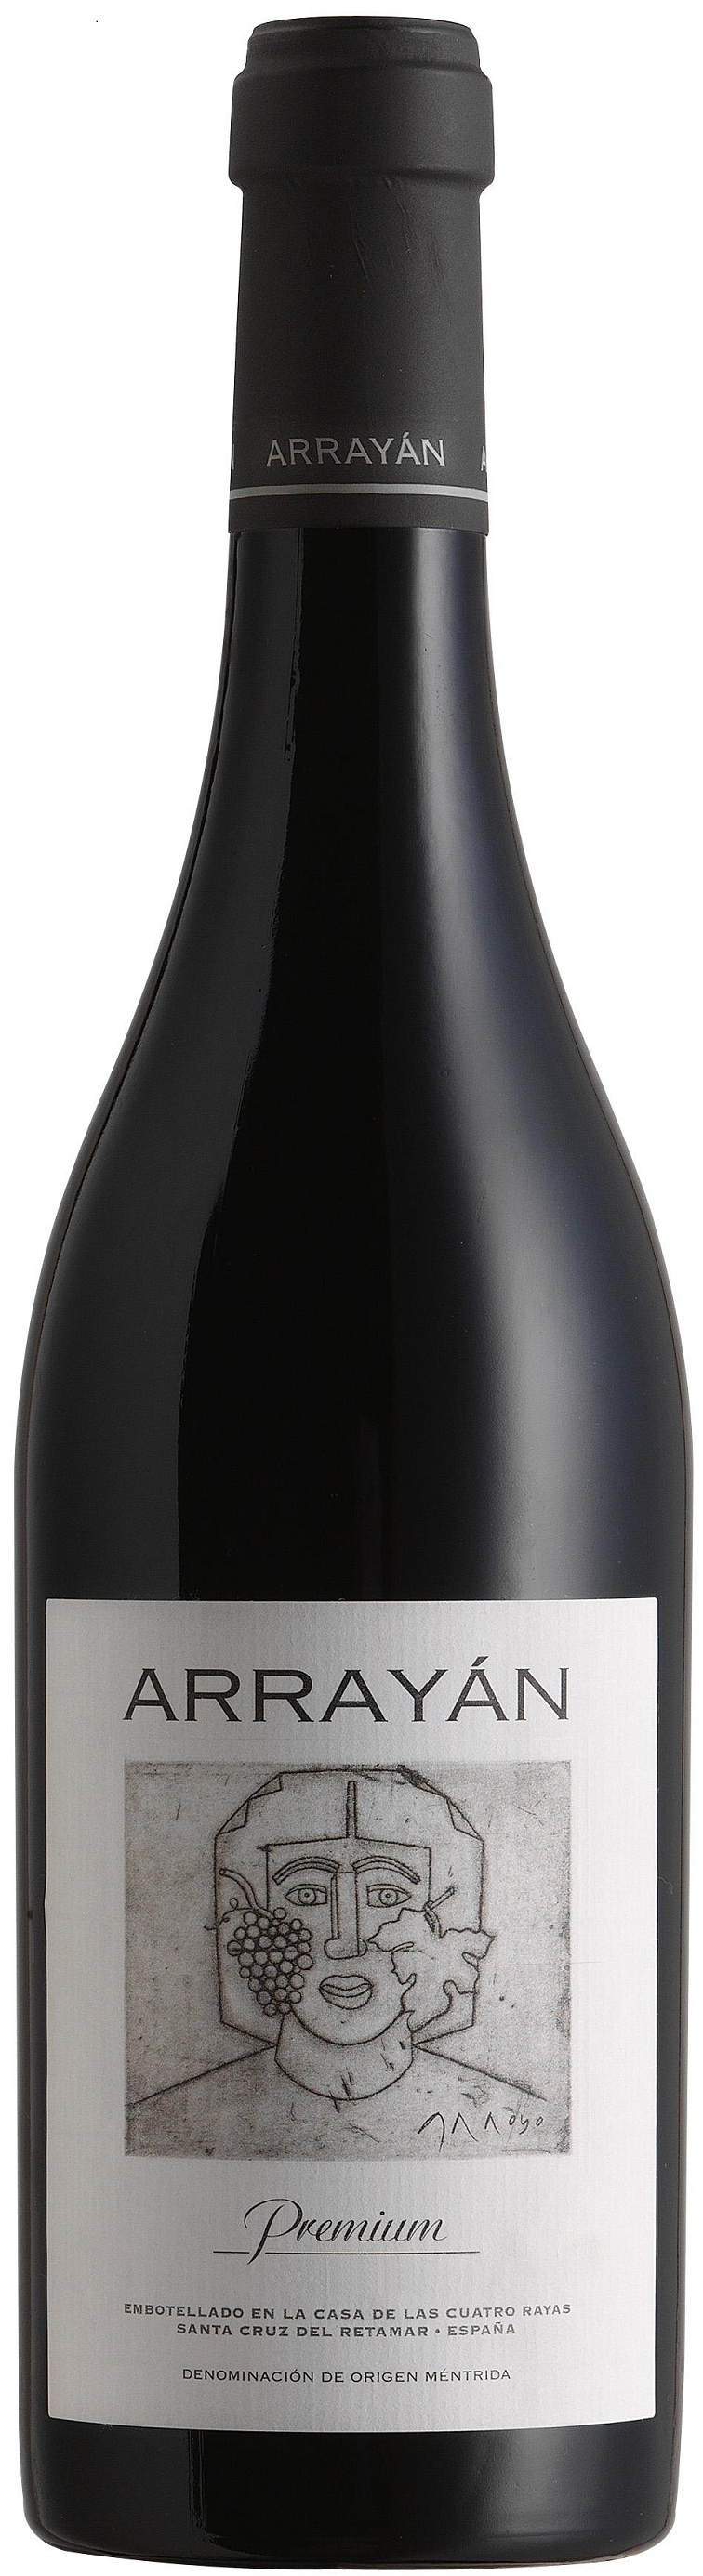 Imagen de la botella de Vino Arrayán Premium